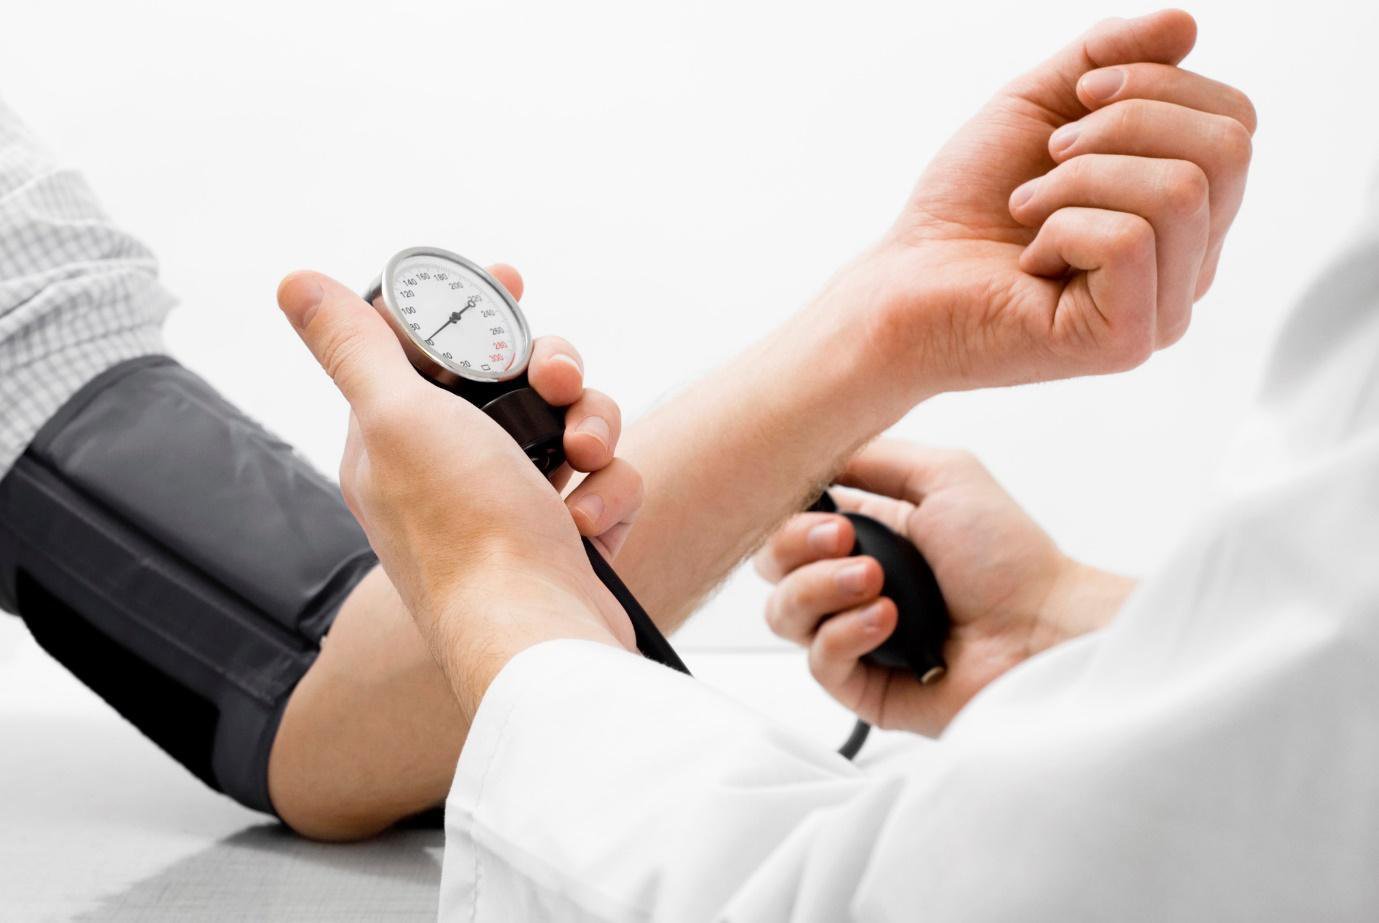 Khám tăng huyết áp là khám những gì? | Vinmec